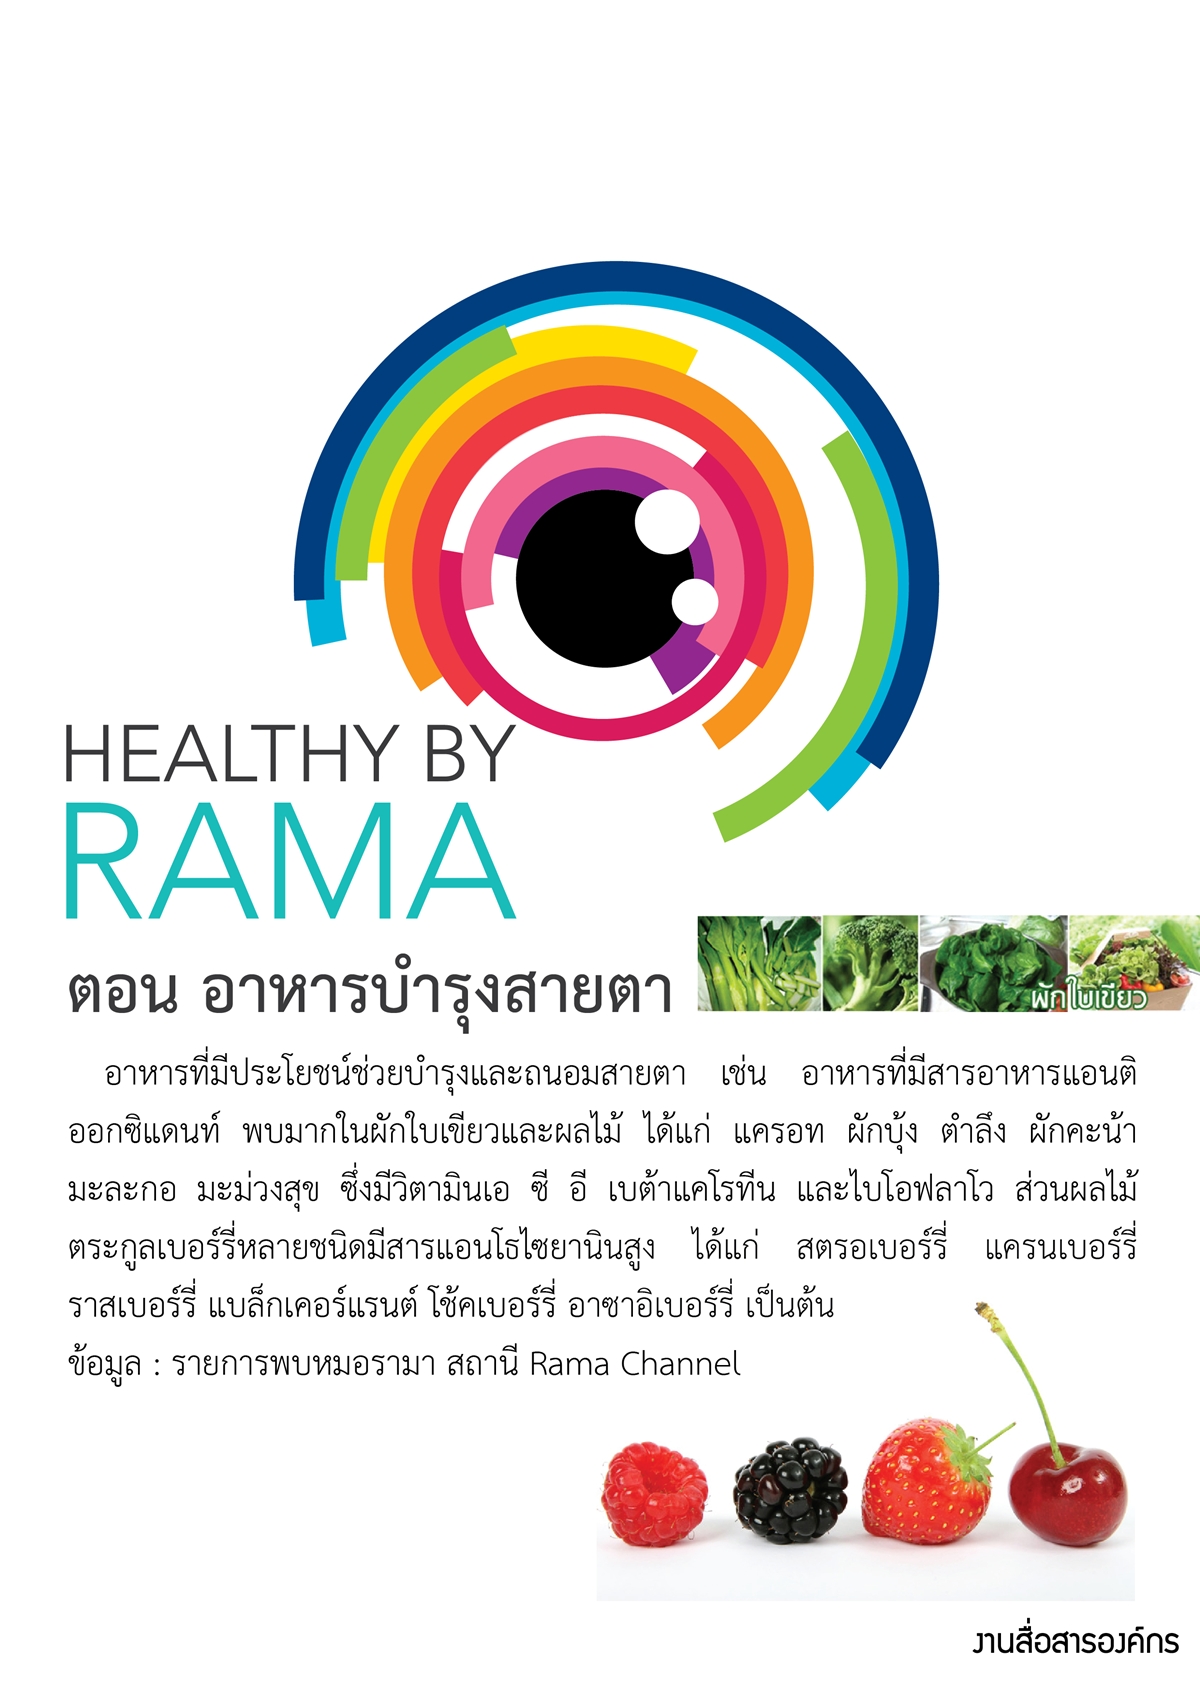 Healthy By Rama ตอน อาหารบำรุงสายตา